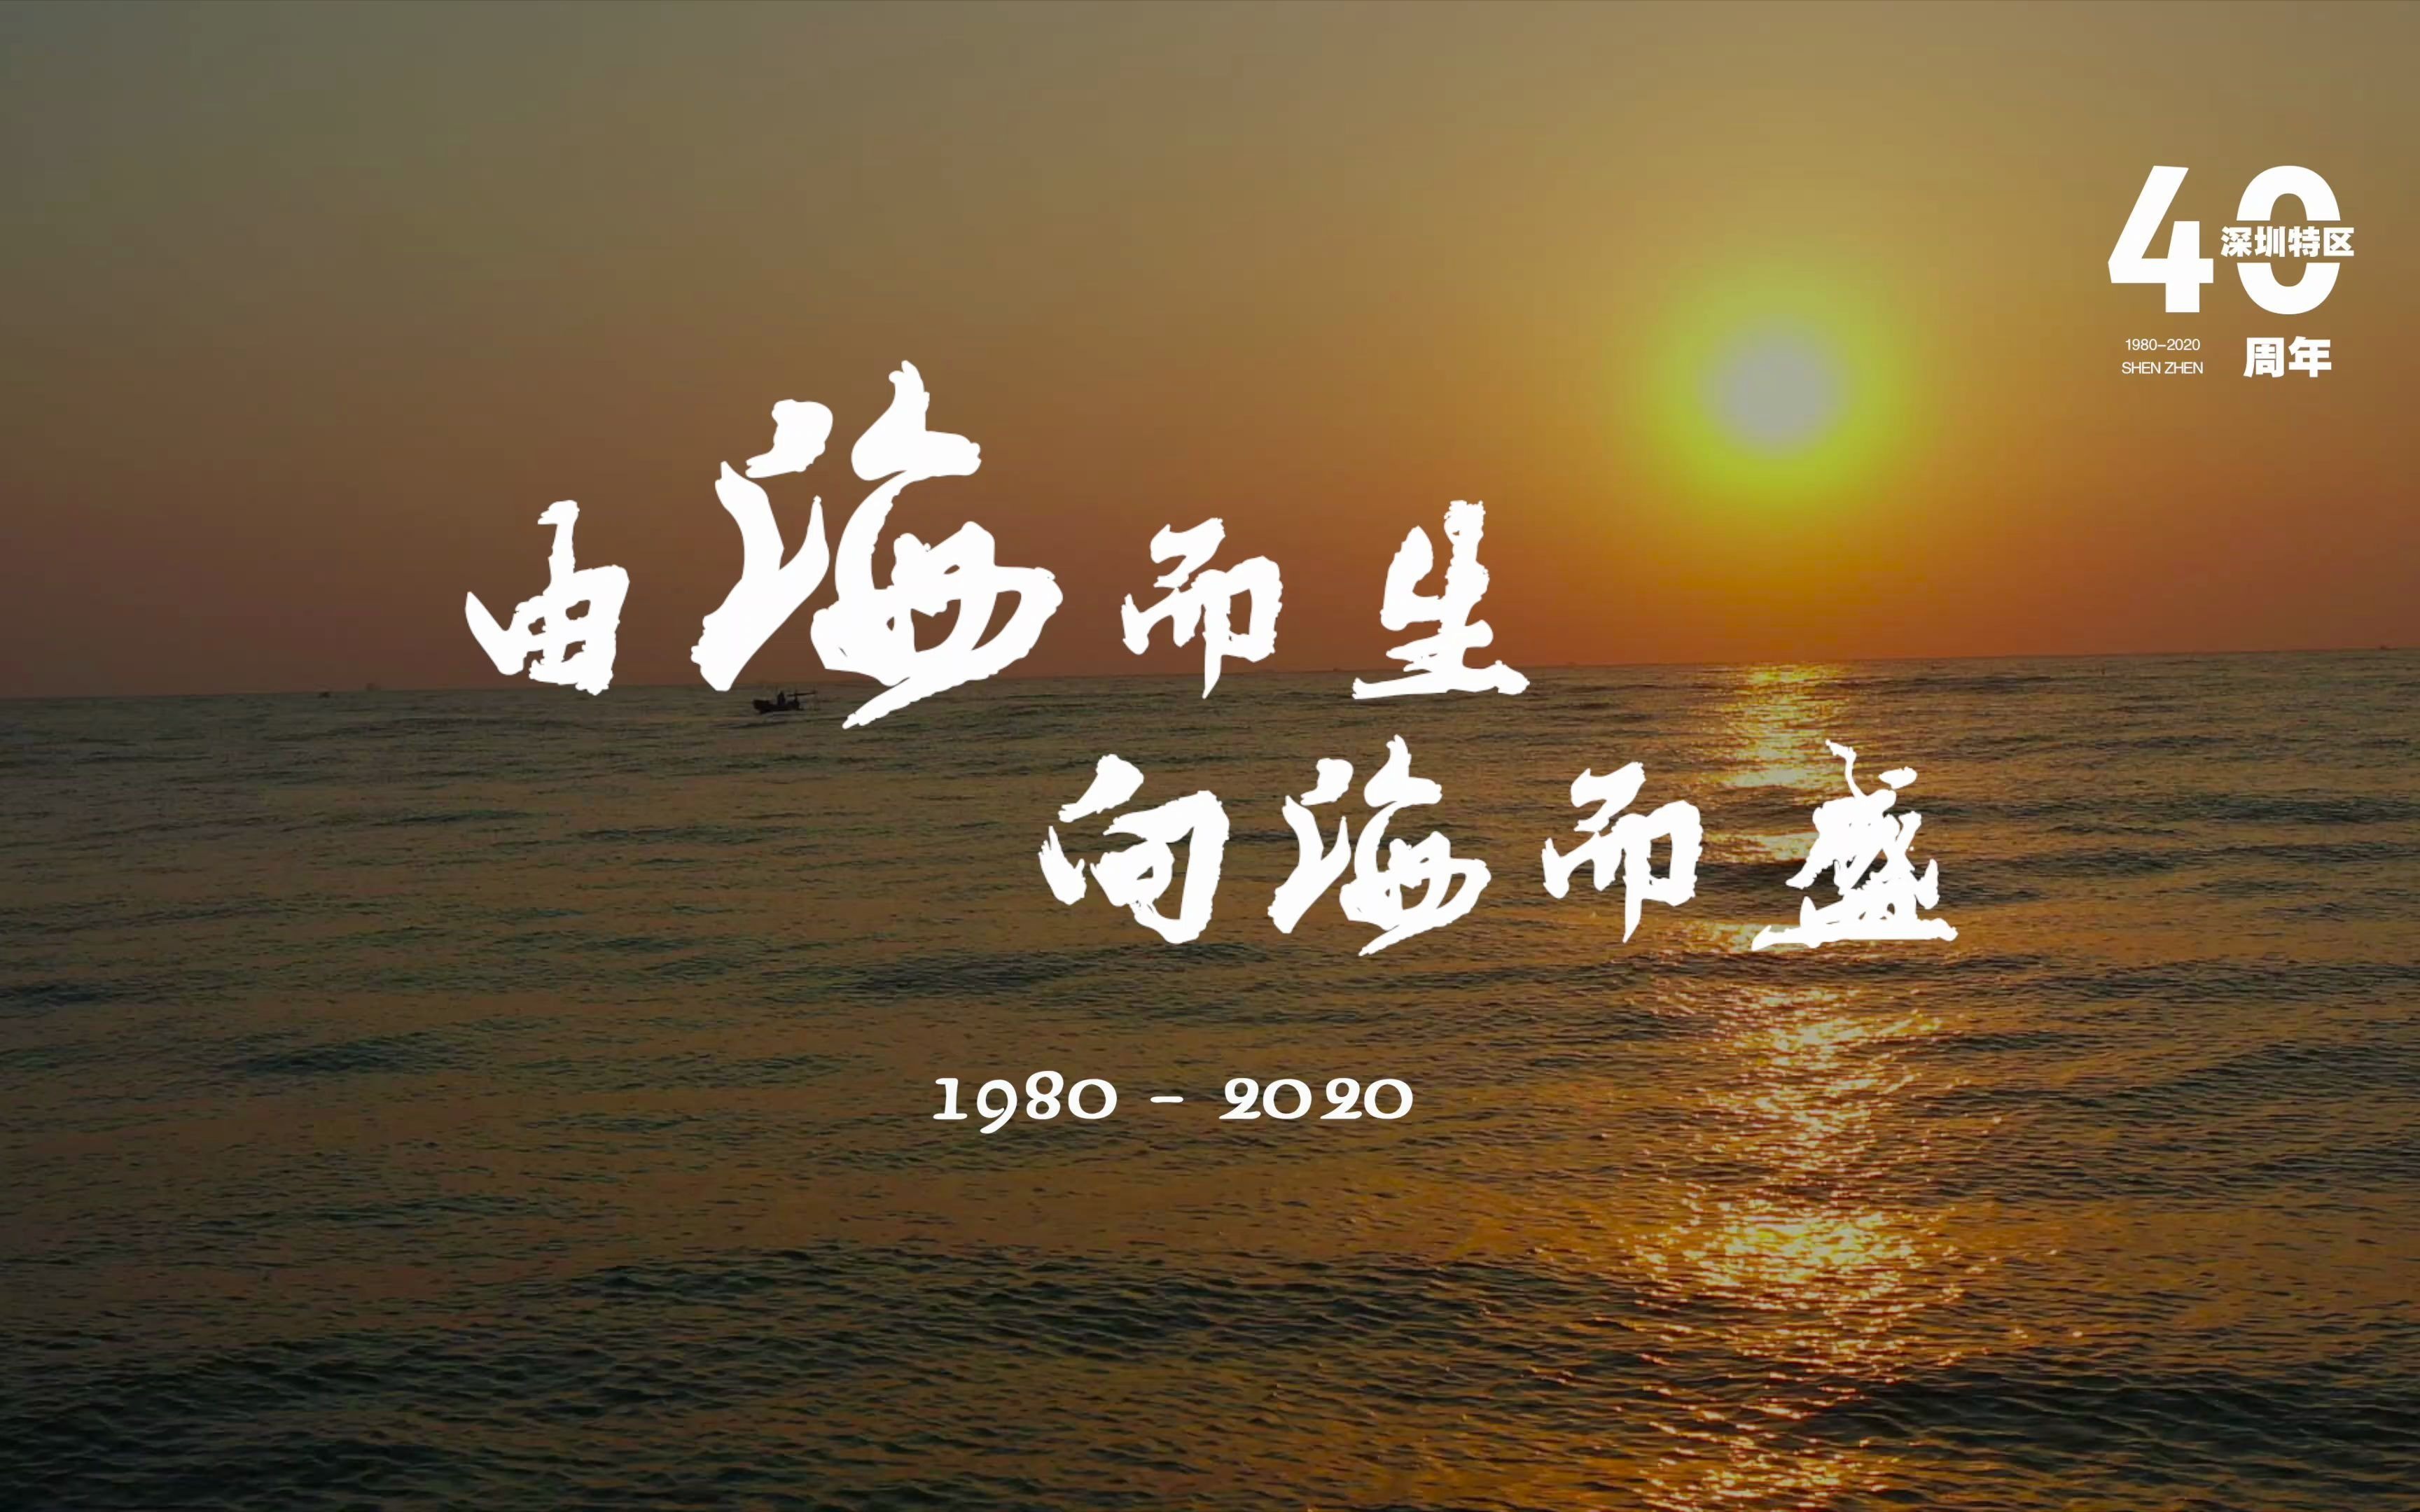 深圳经济特区40周年发展宣传片【4K】